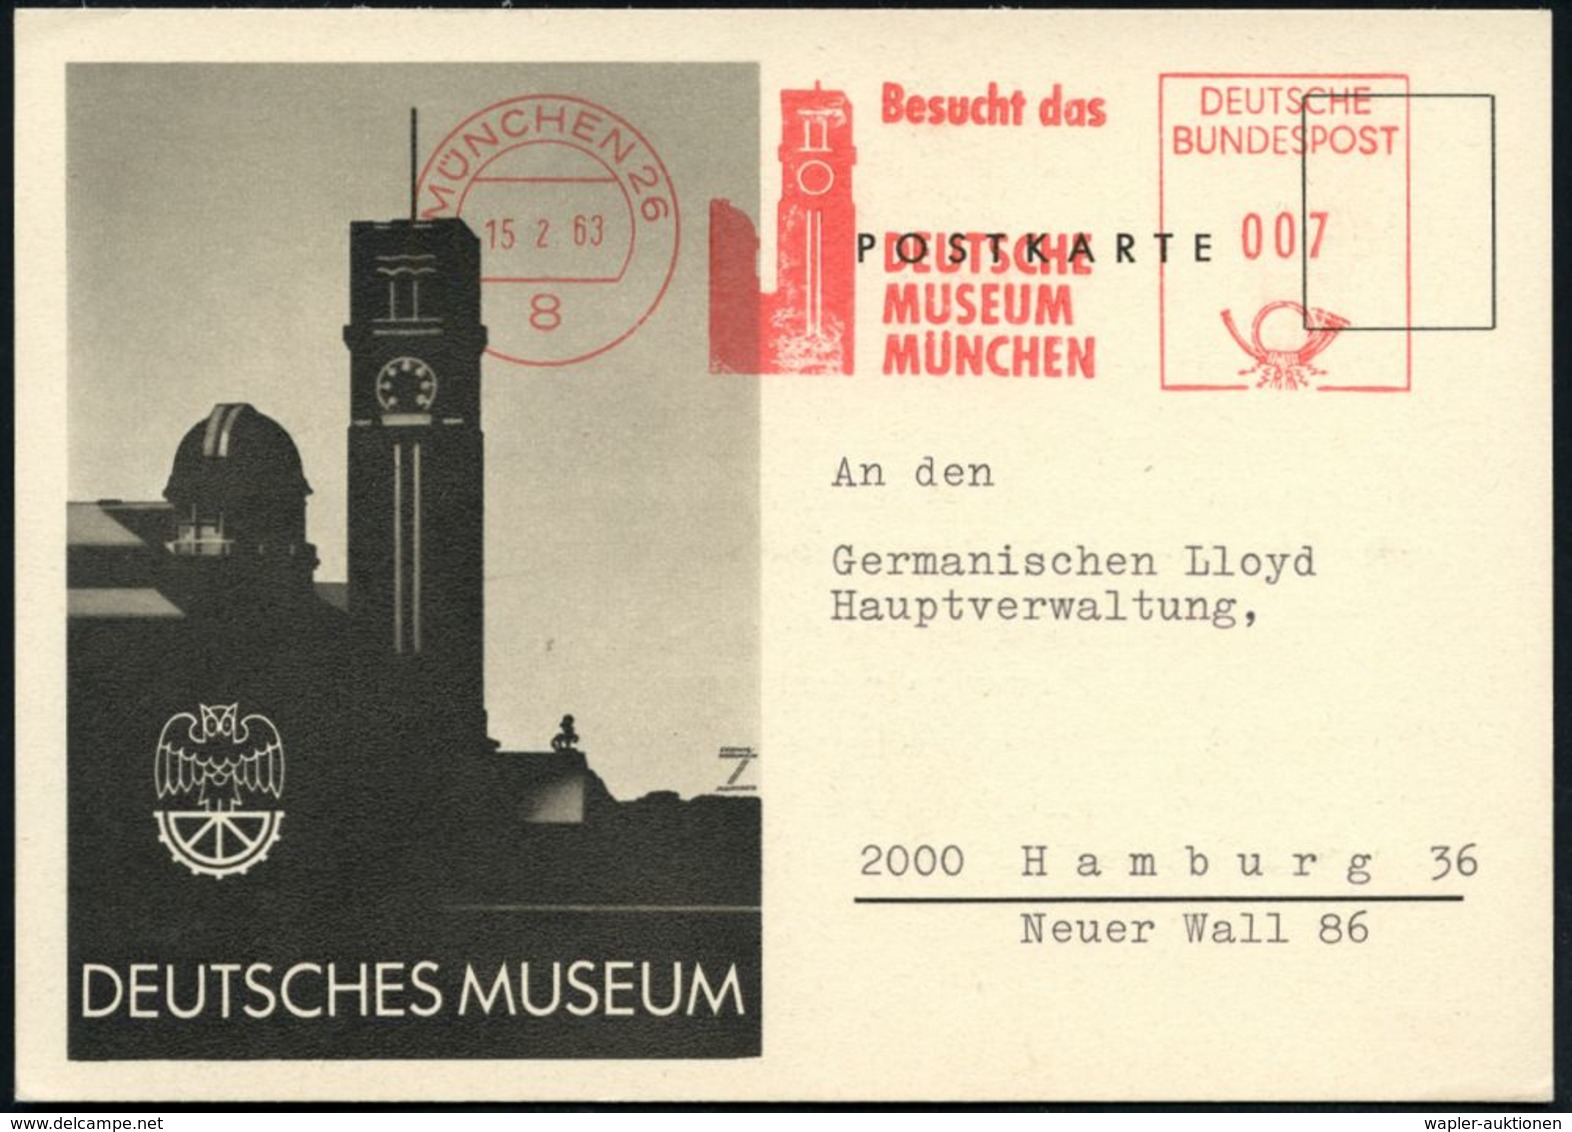 ASTRONOMIE / OBSERVATORIEN / PLANETARIEN : 8 MÜNCHEN 26/ Besucht Das/ DEUTSCHE/ MUSEUM.. 1977 AFS = Astronom. Observator - Astronomy